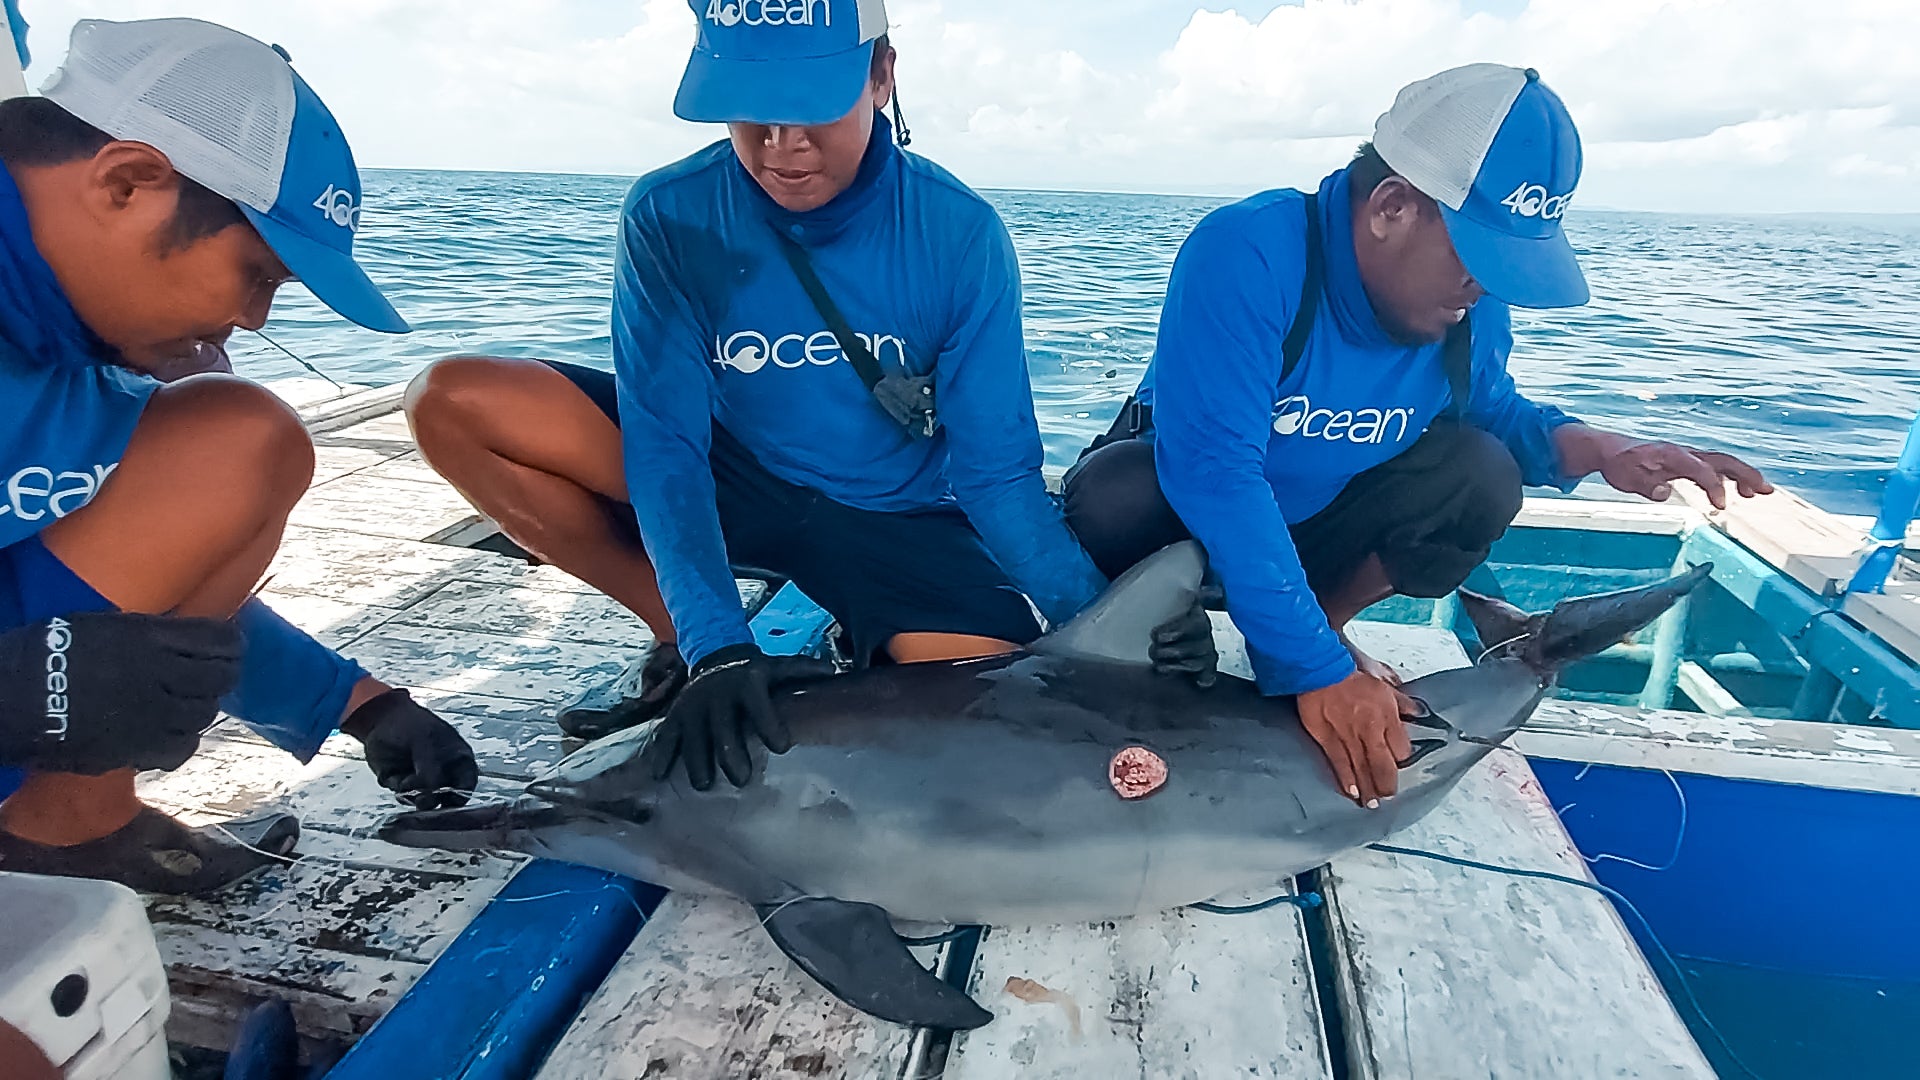 4ocean Crews Rescue Entangled Dolphin